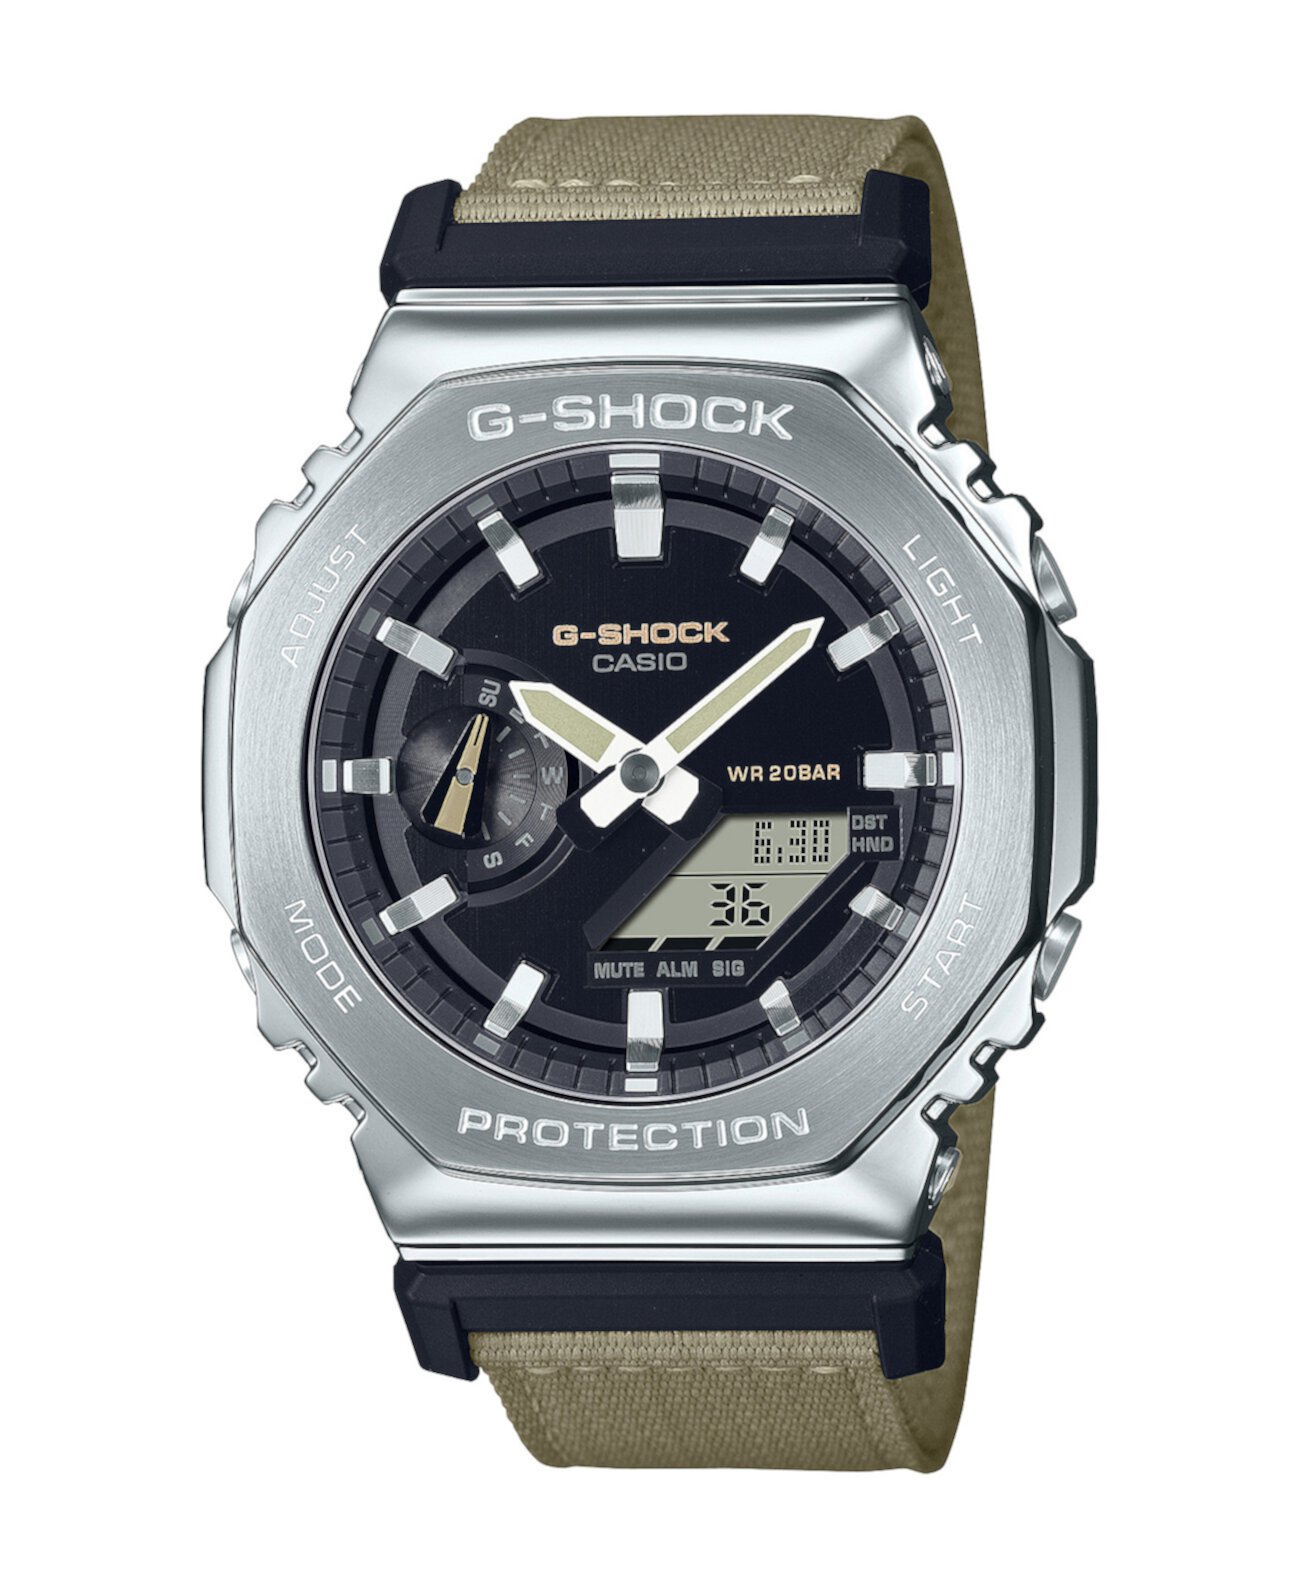 Мужские аналого-цифровые часы с металлическим корпусом и коричневым тканевым ремешком, 44,4 мм, GM2100C-5A G-Shock